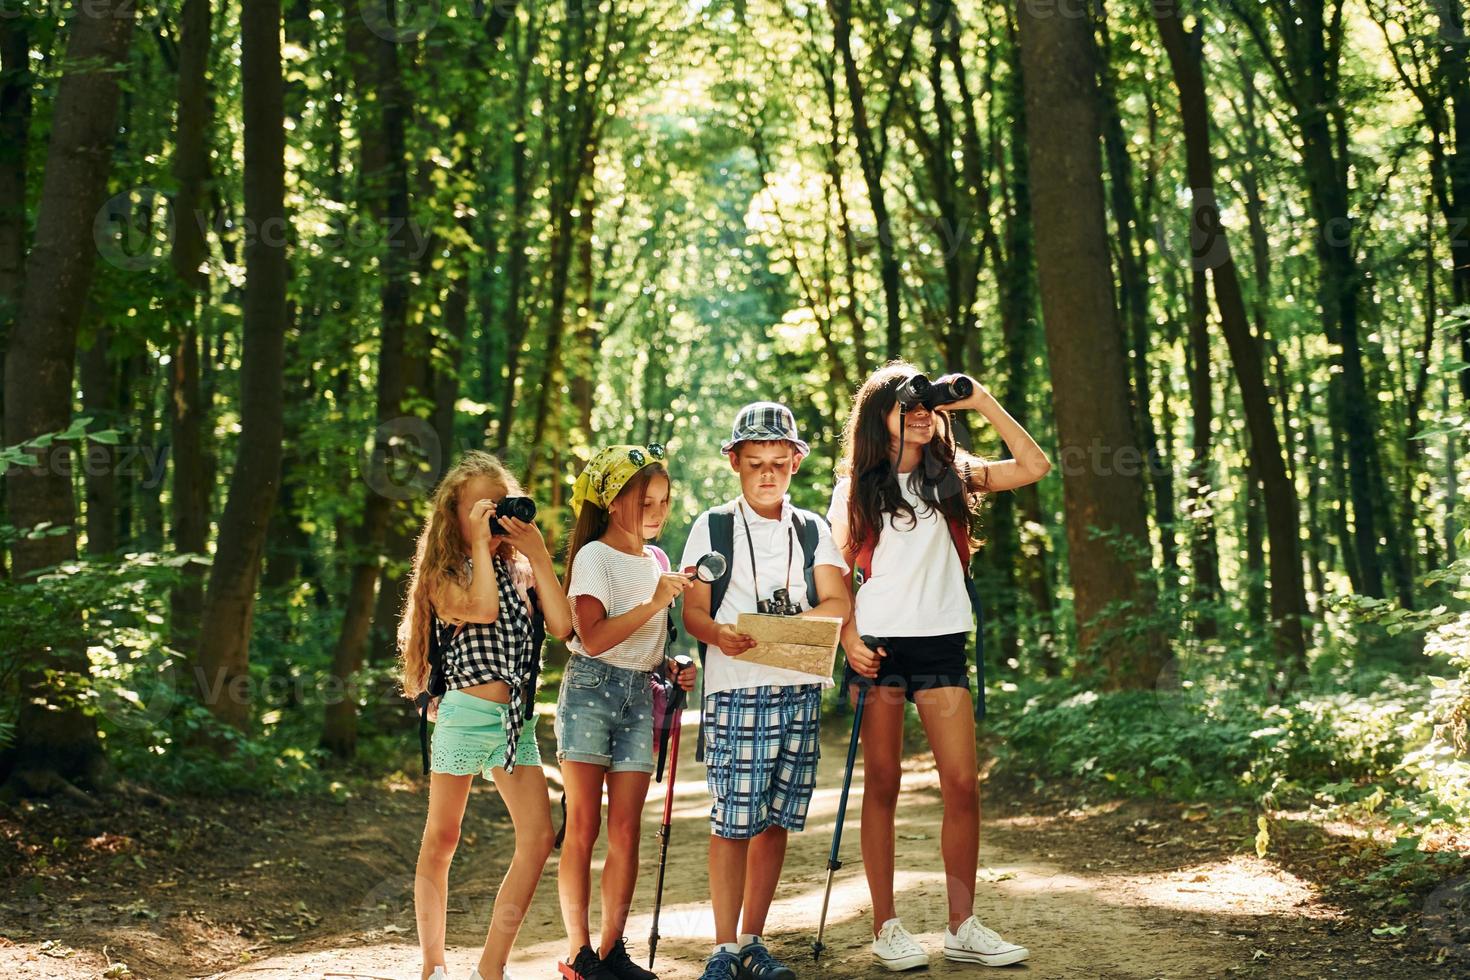 chercher le chemin. enfants se promenant dans la forêt avec équipement de voyage photo